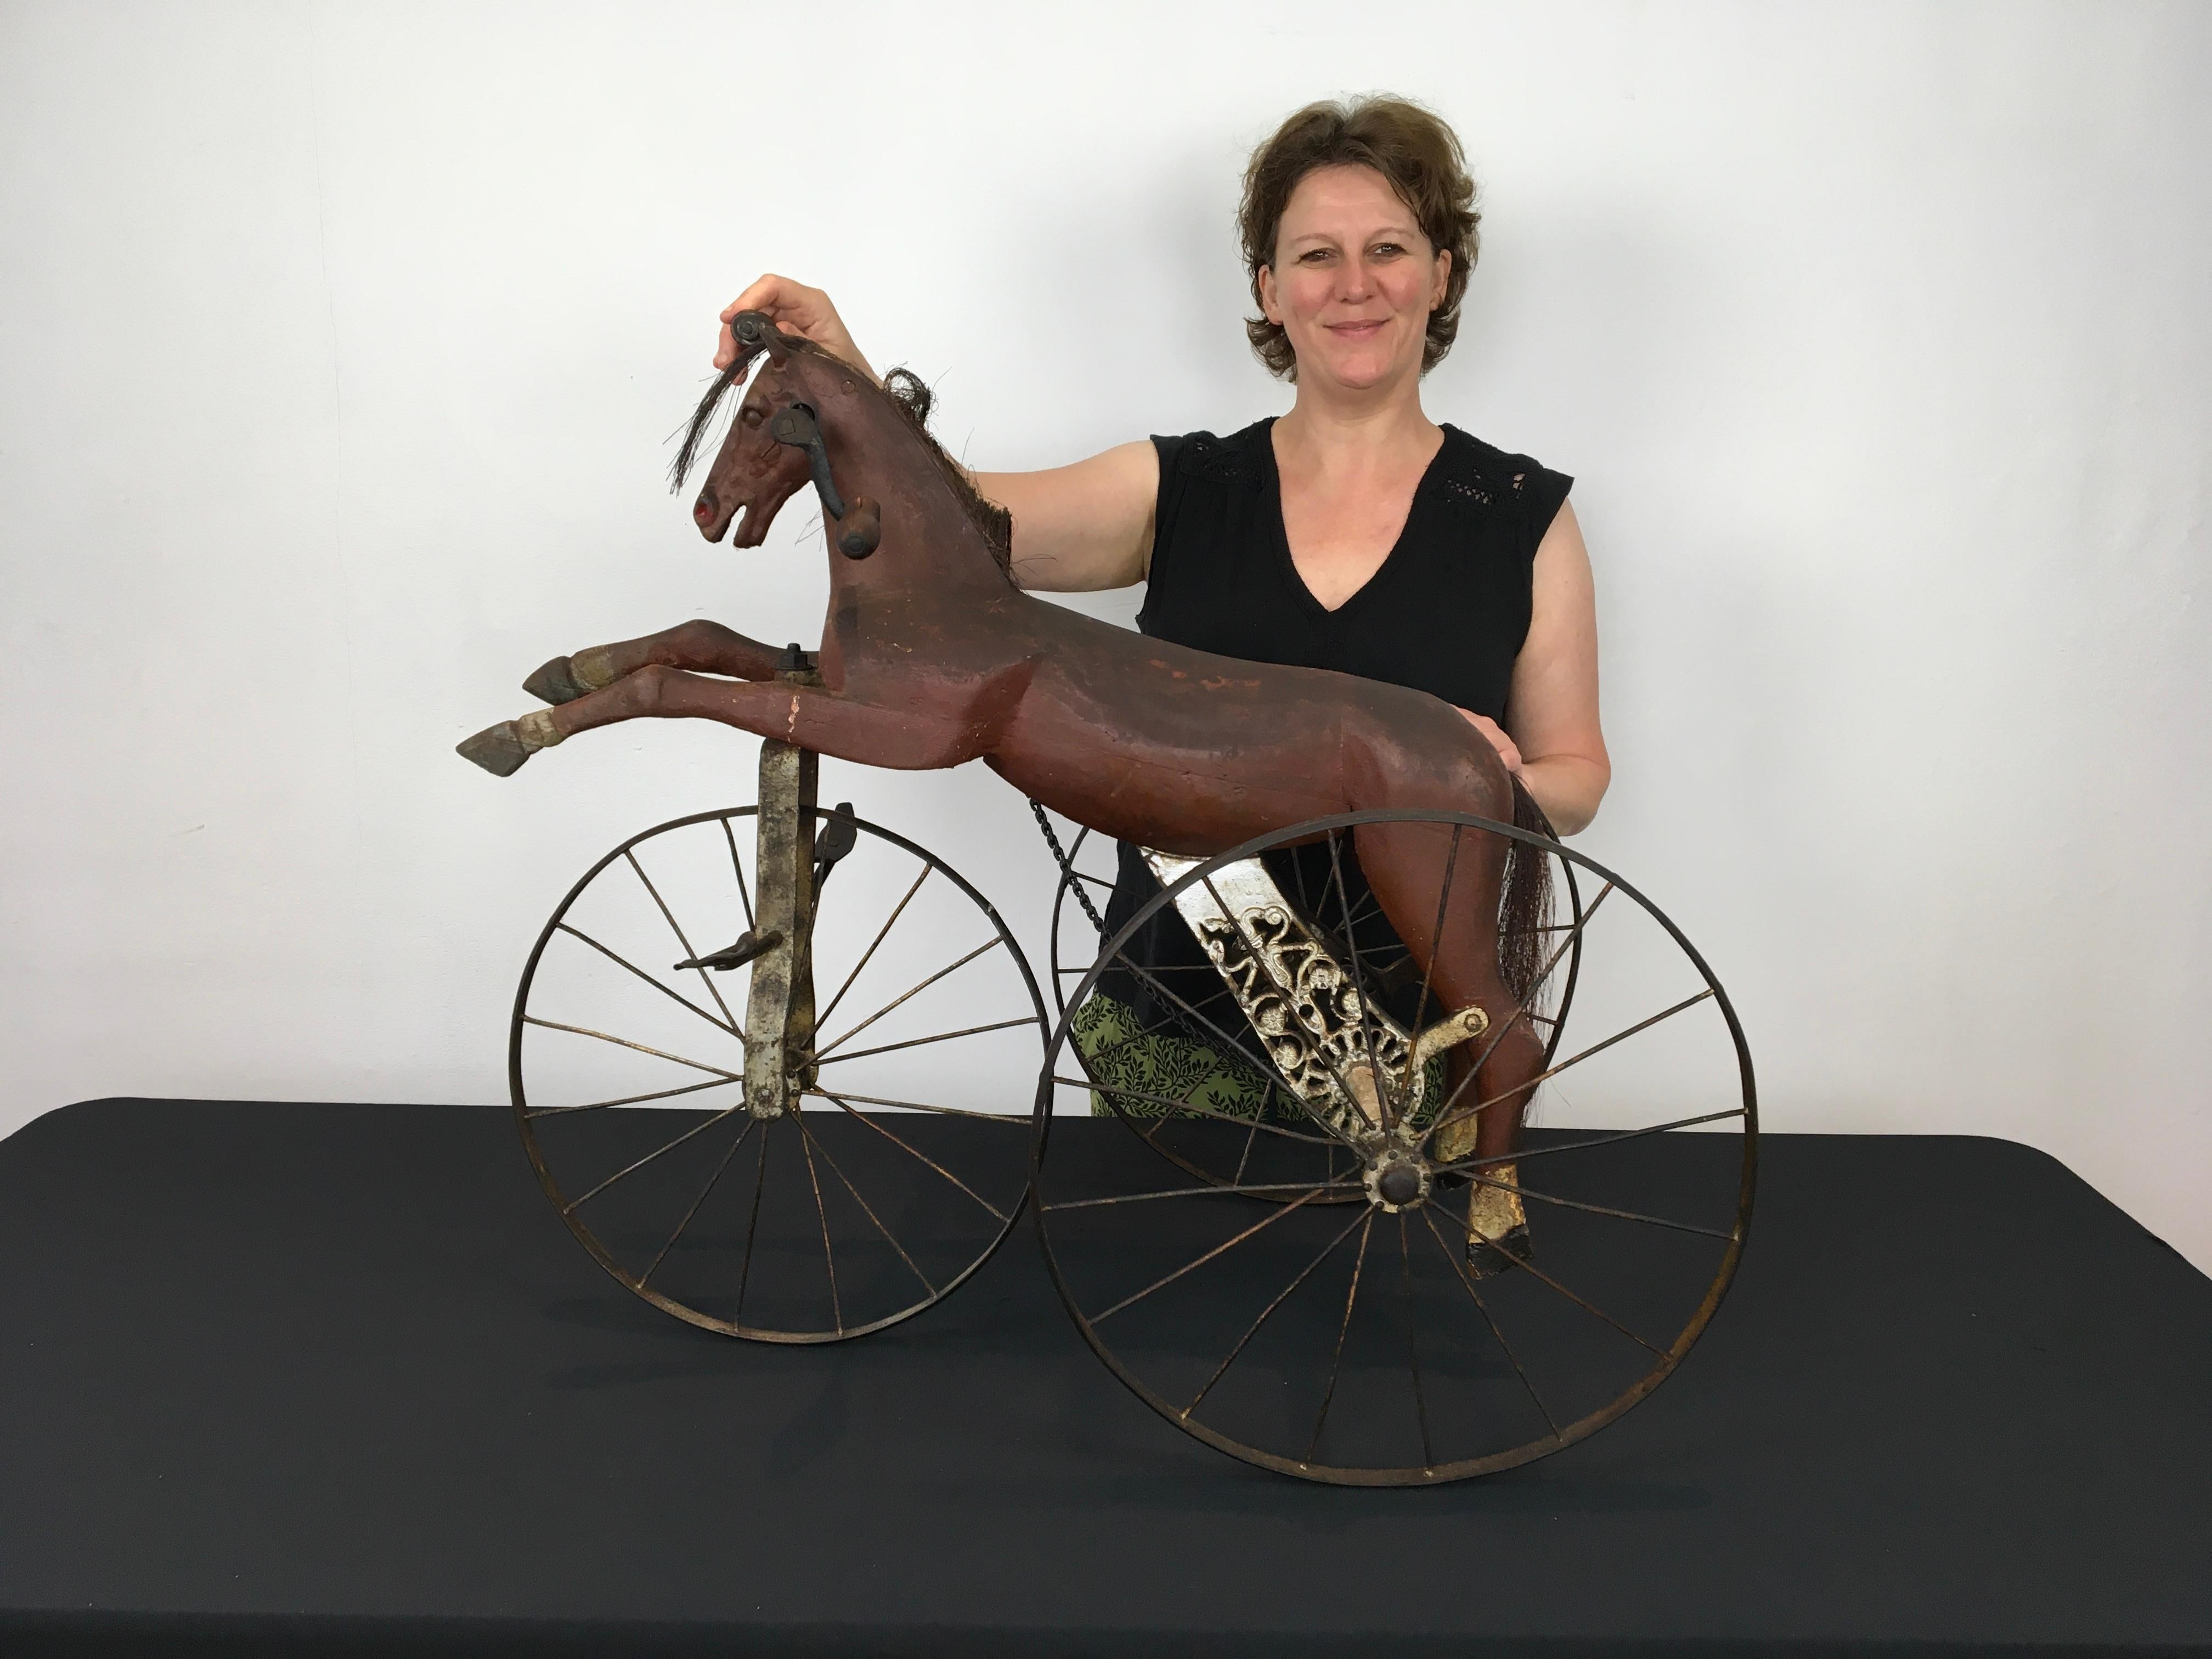 Antikes Dreirad-Pferde-Spielzeug - Kinder-Dreirad mit Pferd. 
Ein französisches antikes Pferdespielzeug um 1890 - 1910.
Ein Pferdespielzeug auf drei Eisenrädern - Dreiradspielzeug.
Der Pferdekopf ist aus Eisen gefertigt,  der Körper des Pferdes ist